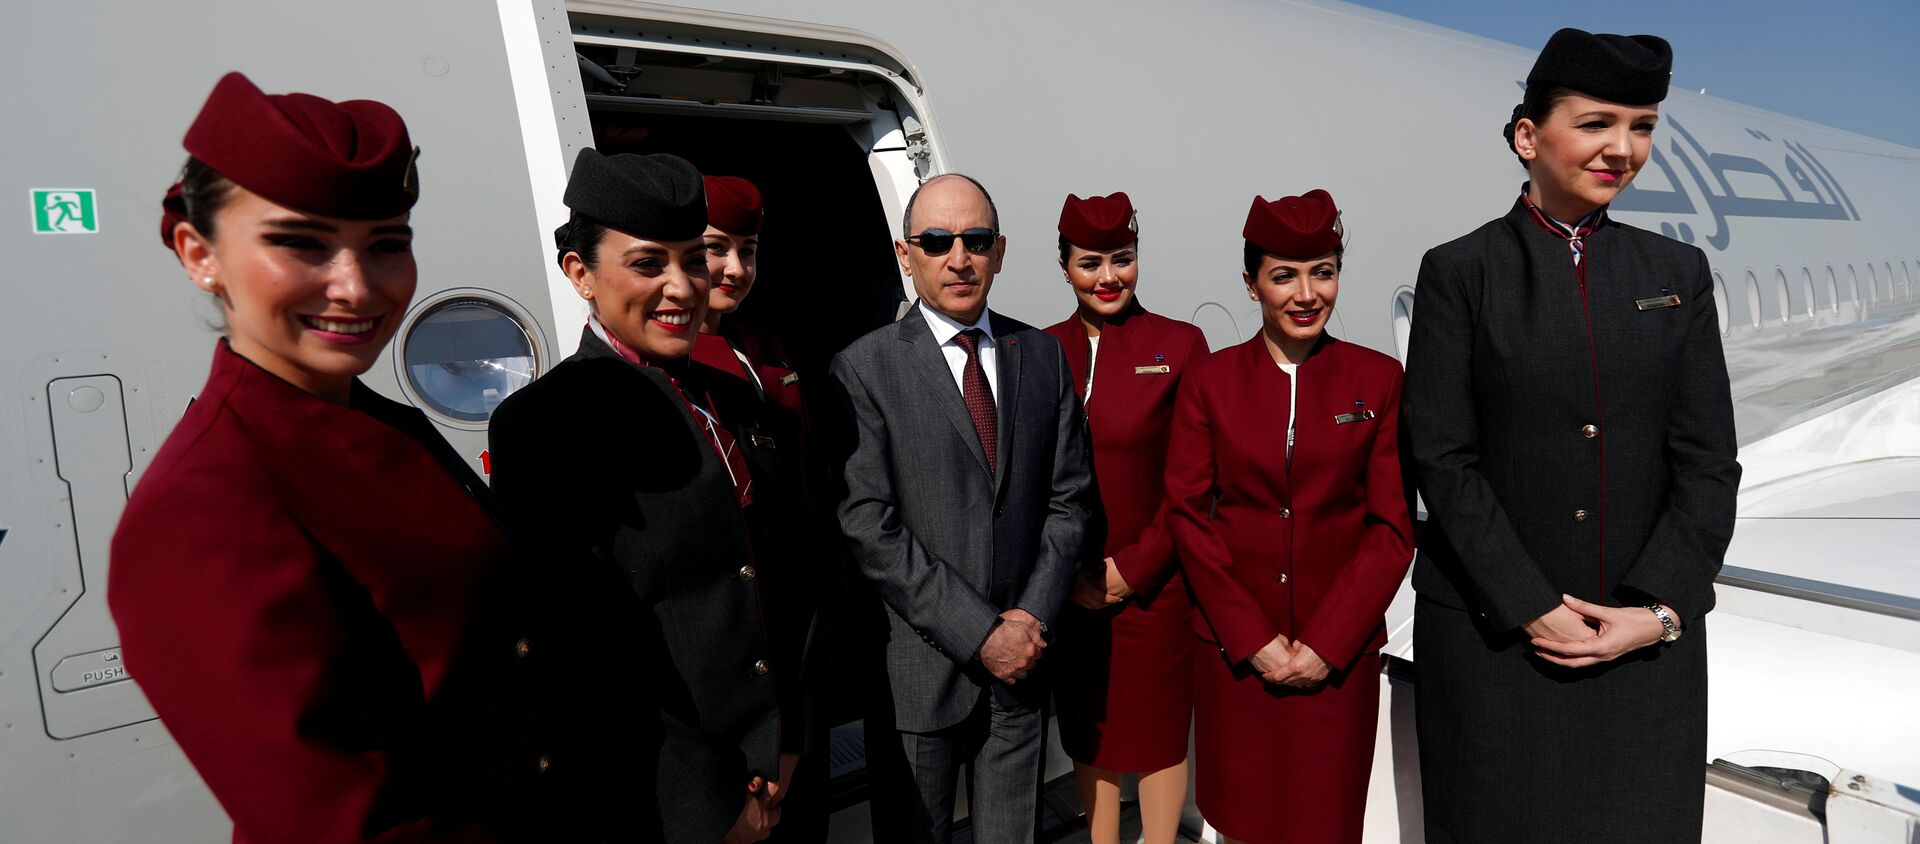 Katar Havayolları CEO'su Ekber el Bekir, Airbus A350-1000'ün kabin personeliyle Antalya'daki 'Eurasia Airshow'da poz verirken - Sputnik Türkiye, 1920, 05.06.2018